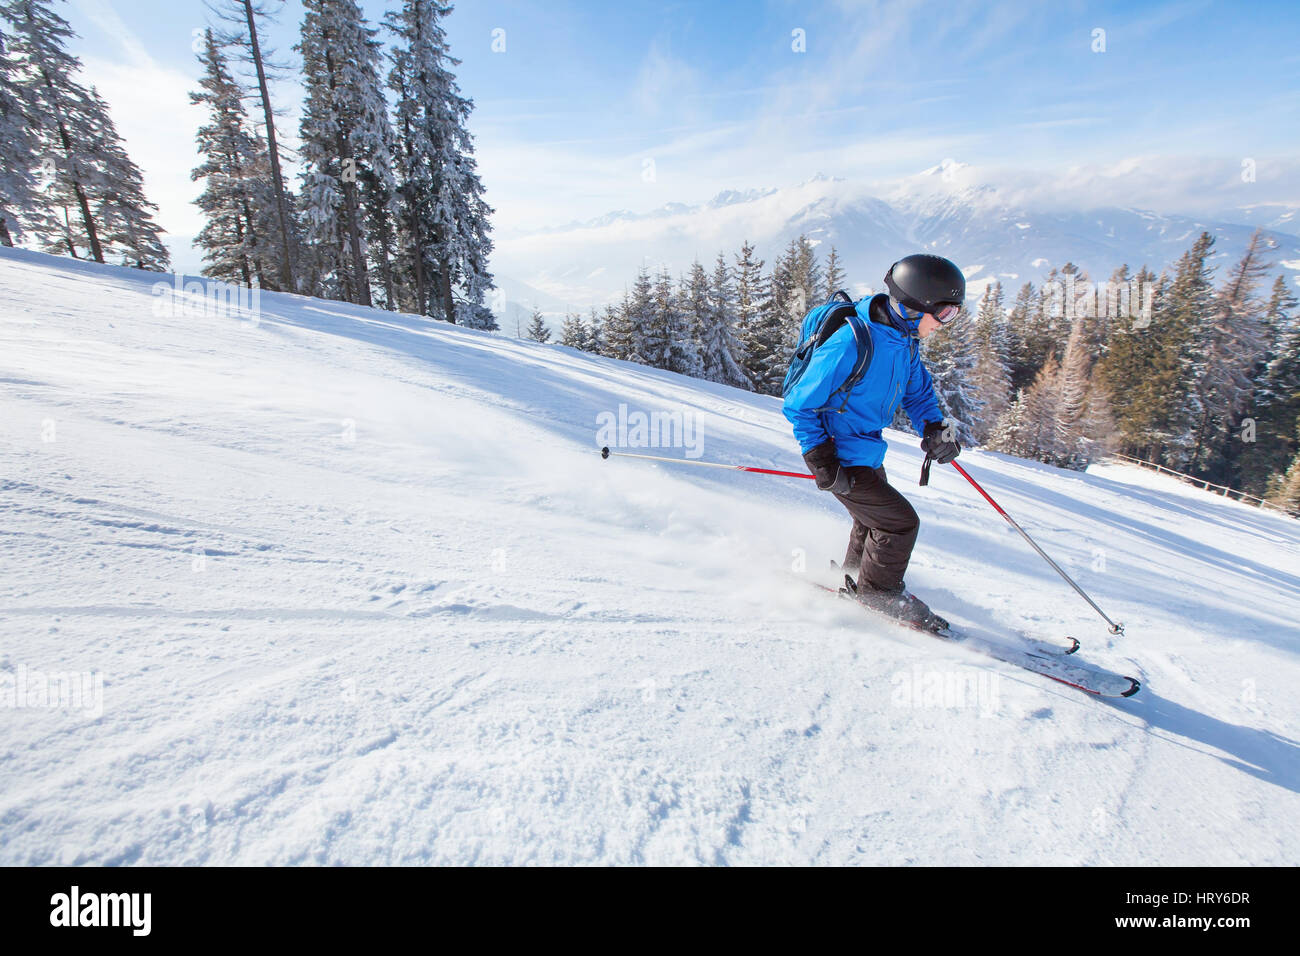 Esquí alpino, esquiador ir rápido al bajar la montaña, deporte de inviernos antecedentes Foto de stock